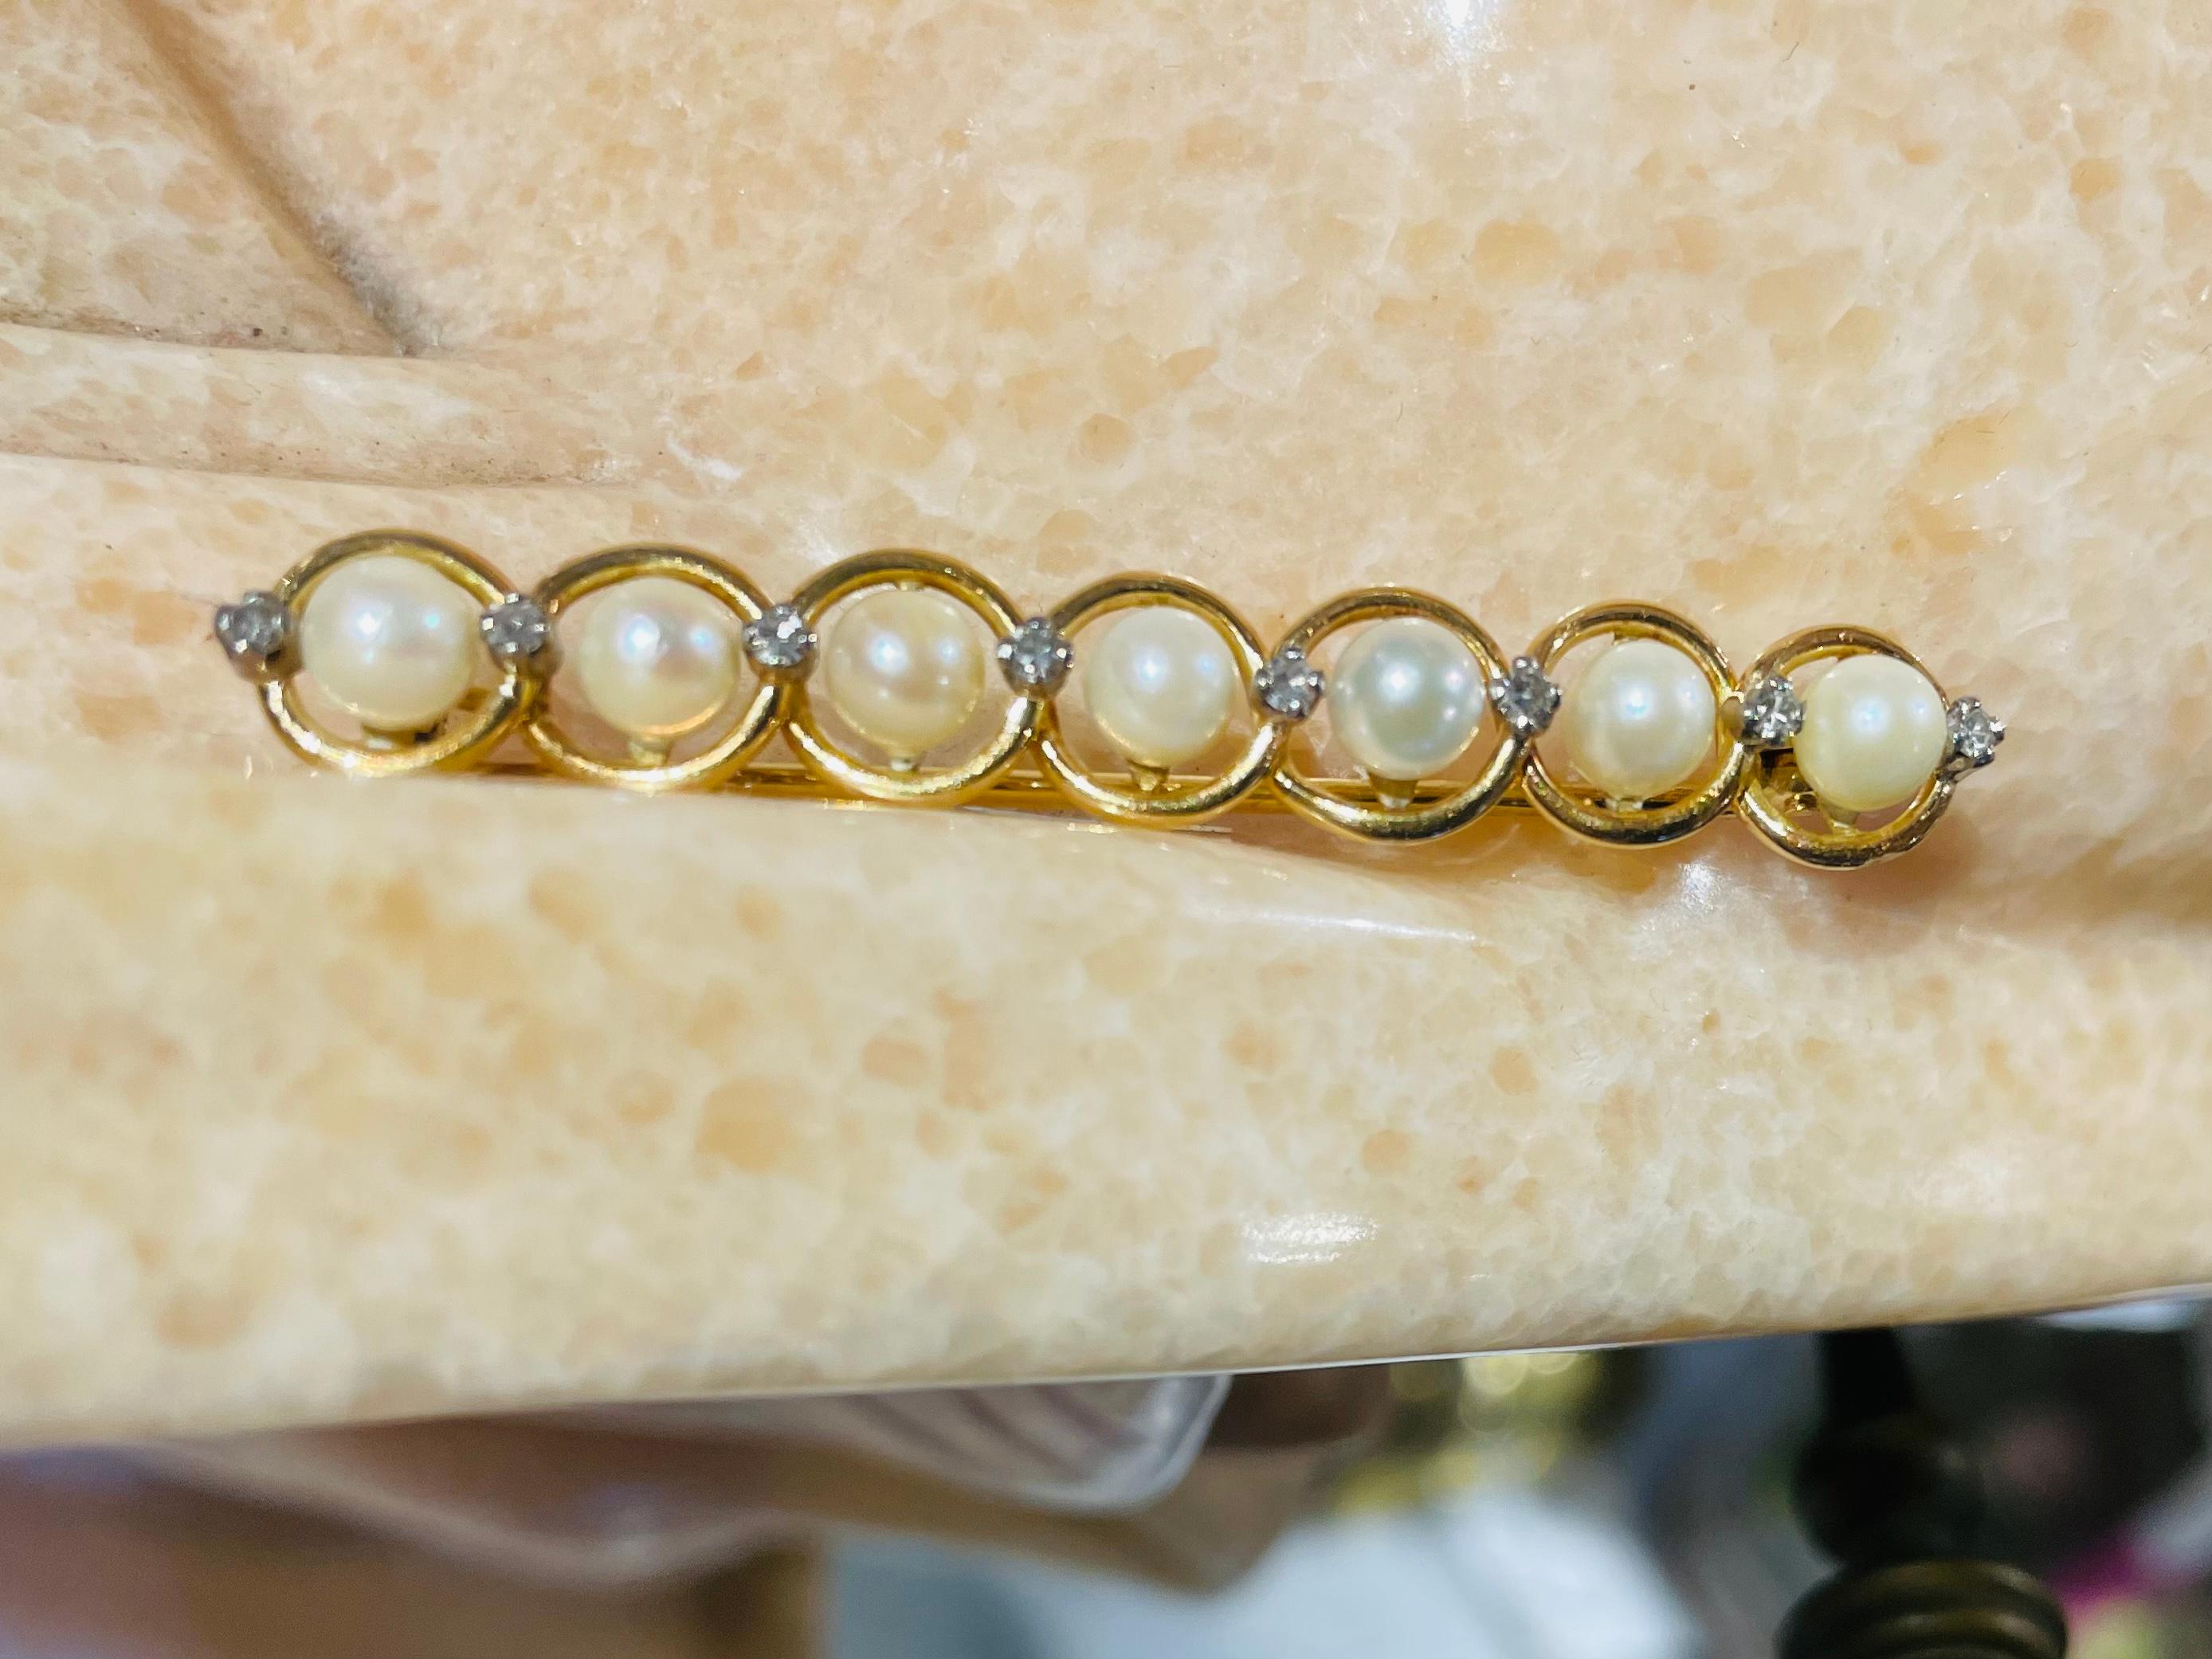 bar shaped pearls